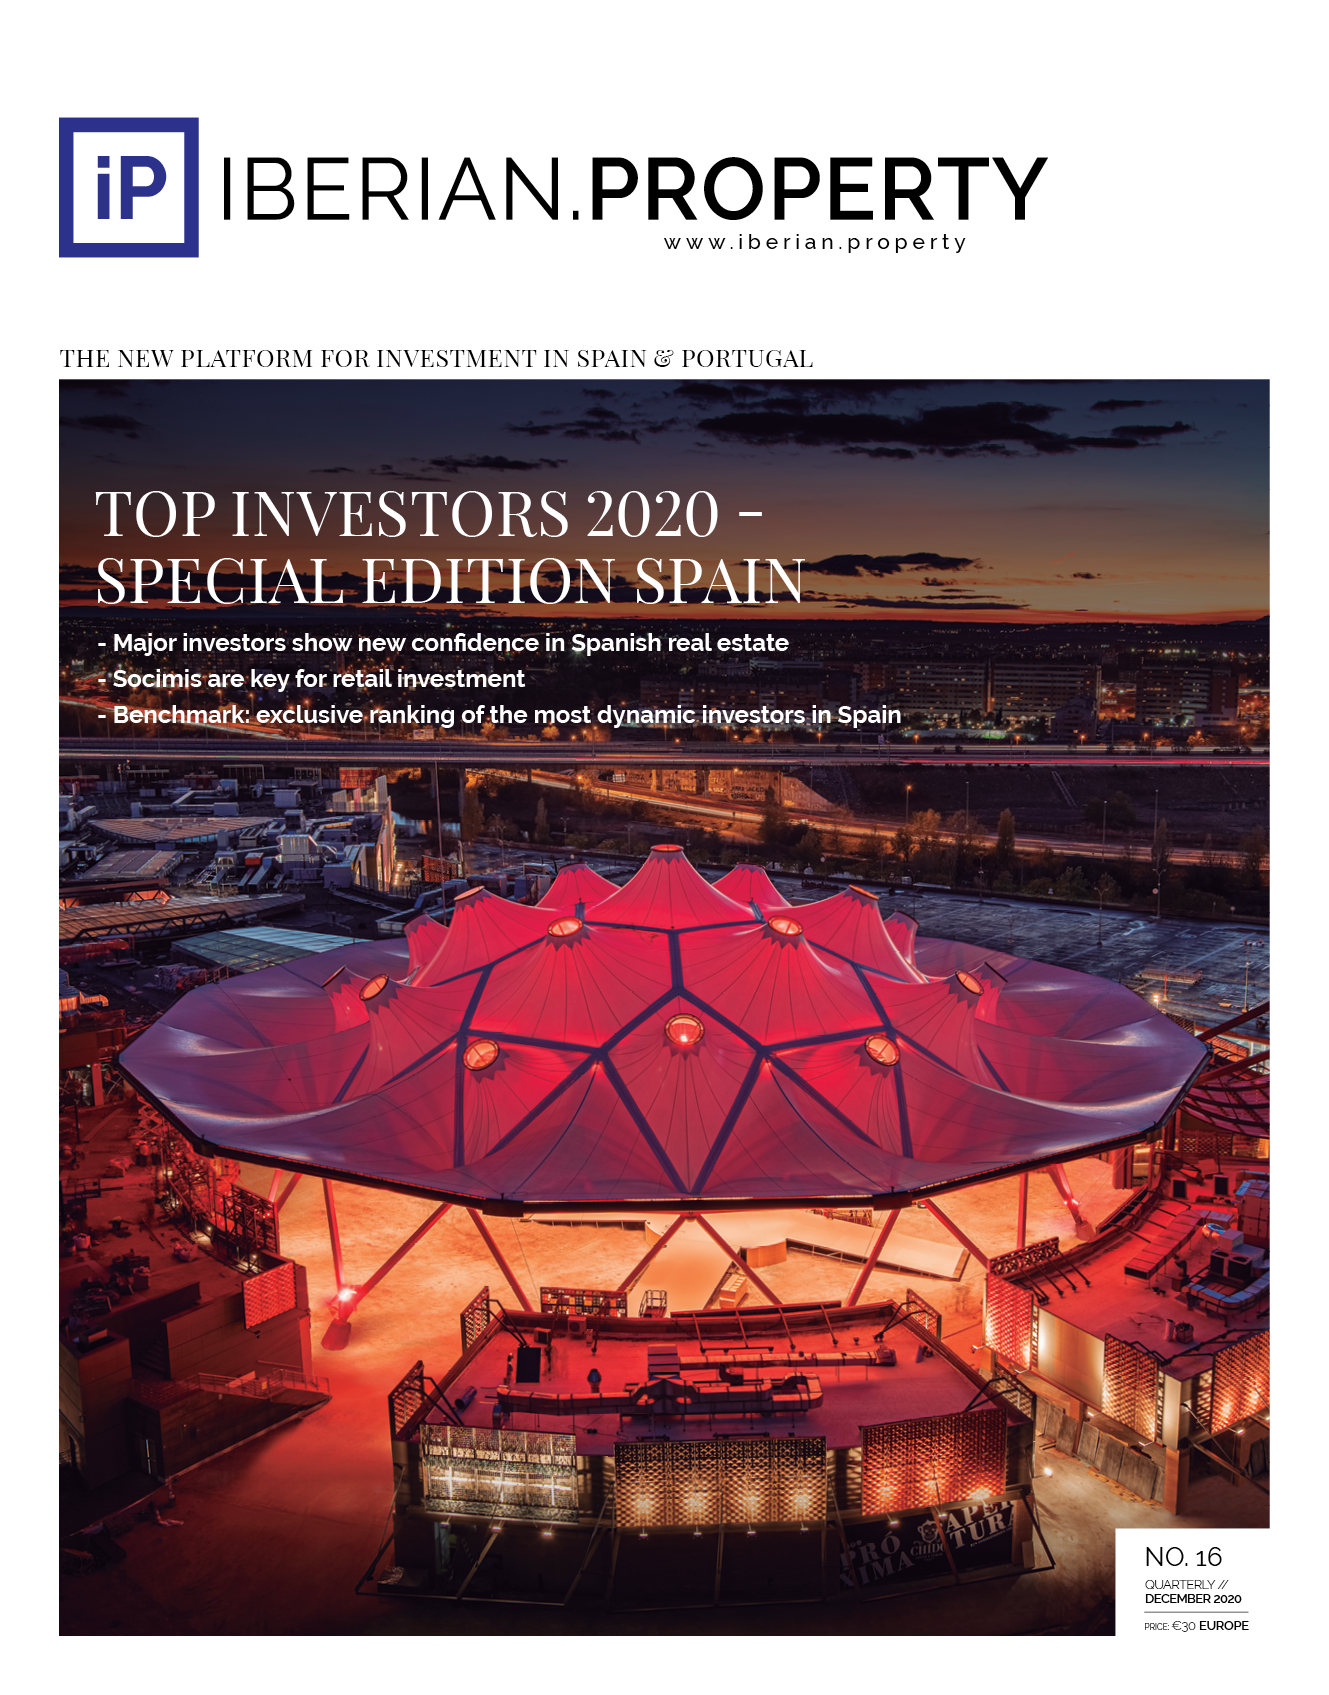 Top Investors 2020 - Special Edition Spain